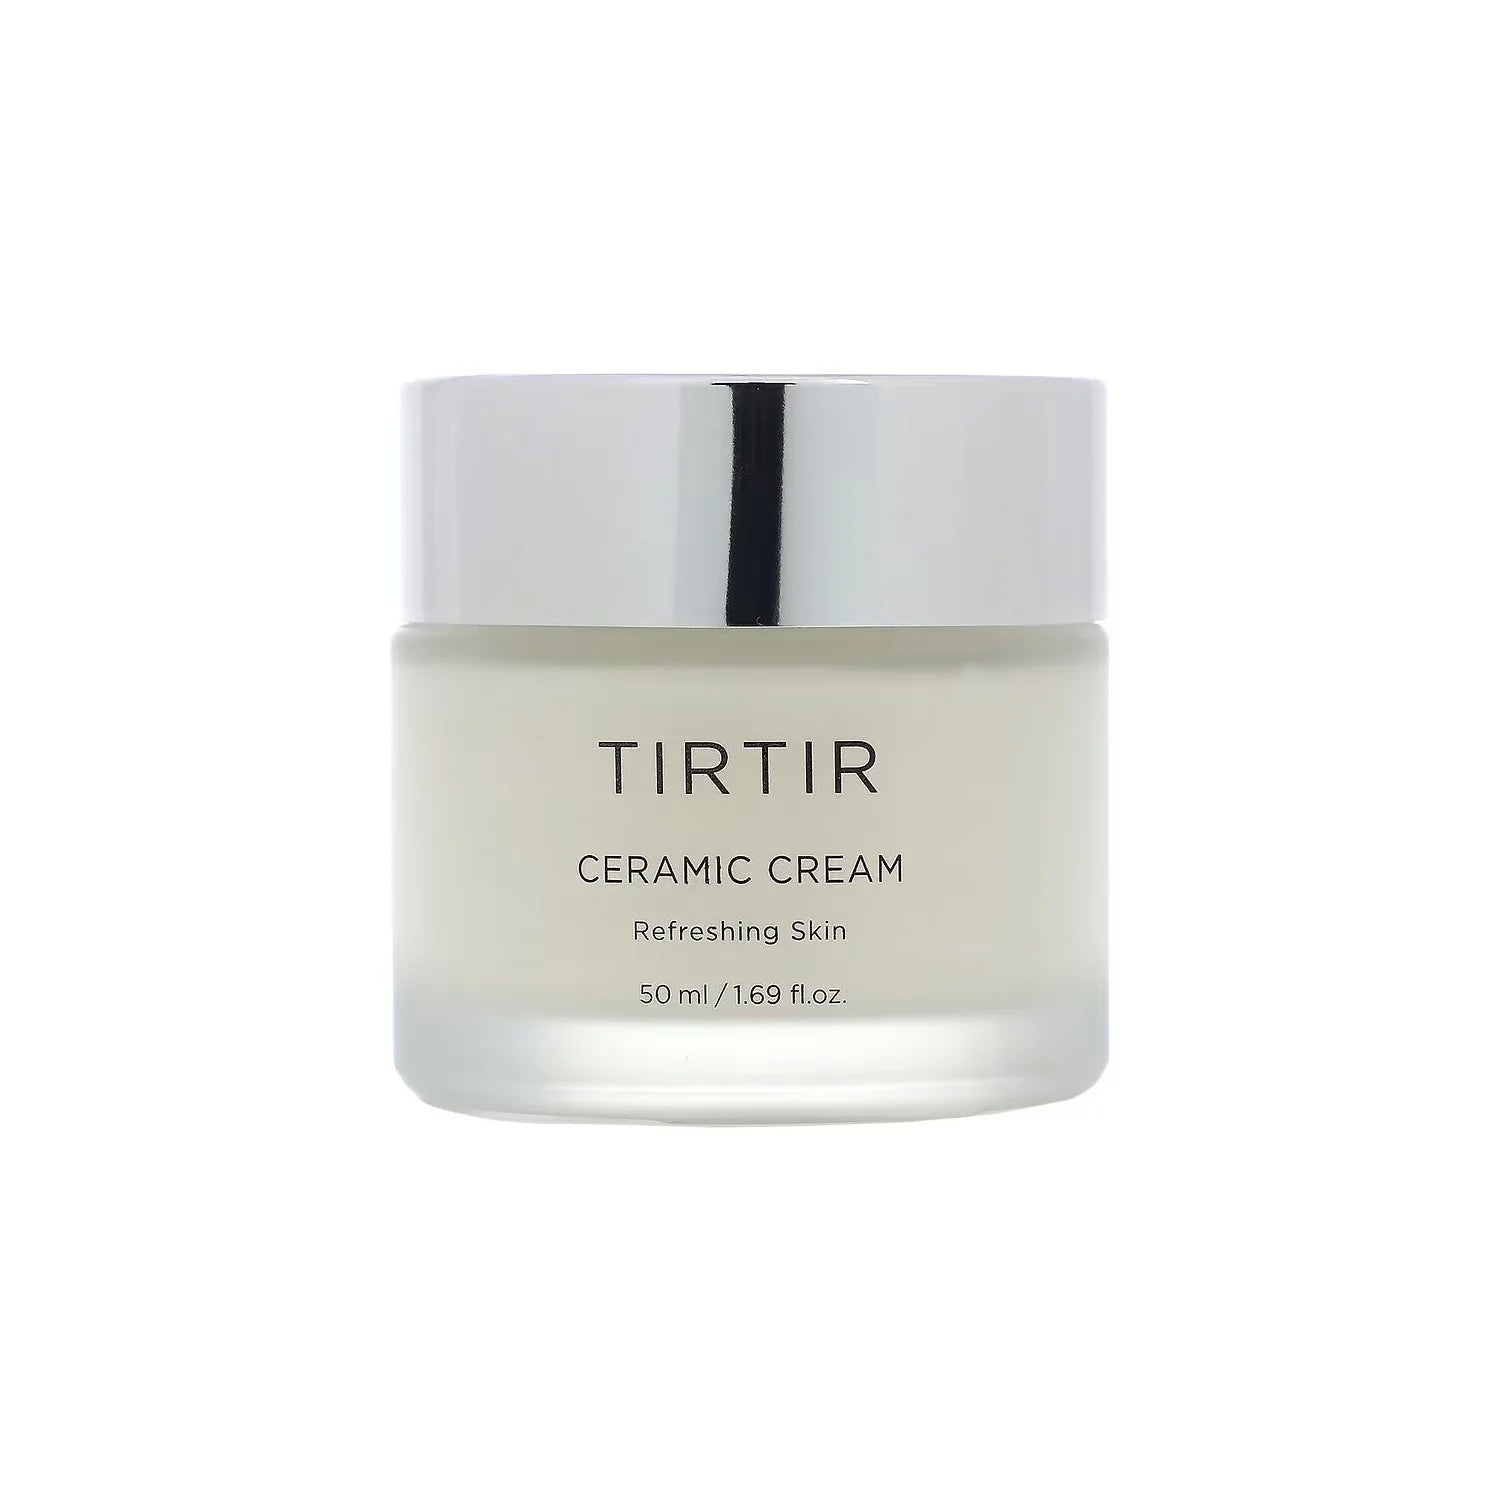 TIRTIR Ceramic Cream best Korean vegan moisturizer for face dry sensitive mature skin anti-aging flaky skin wrinkles deep fine line rough texture K Beauty World